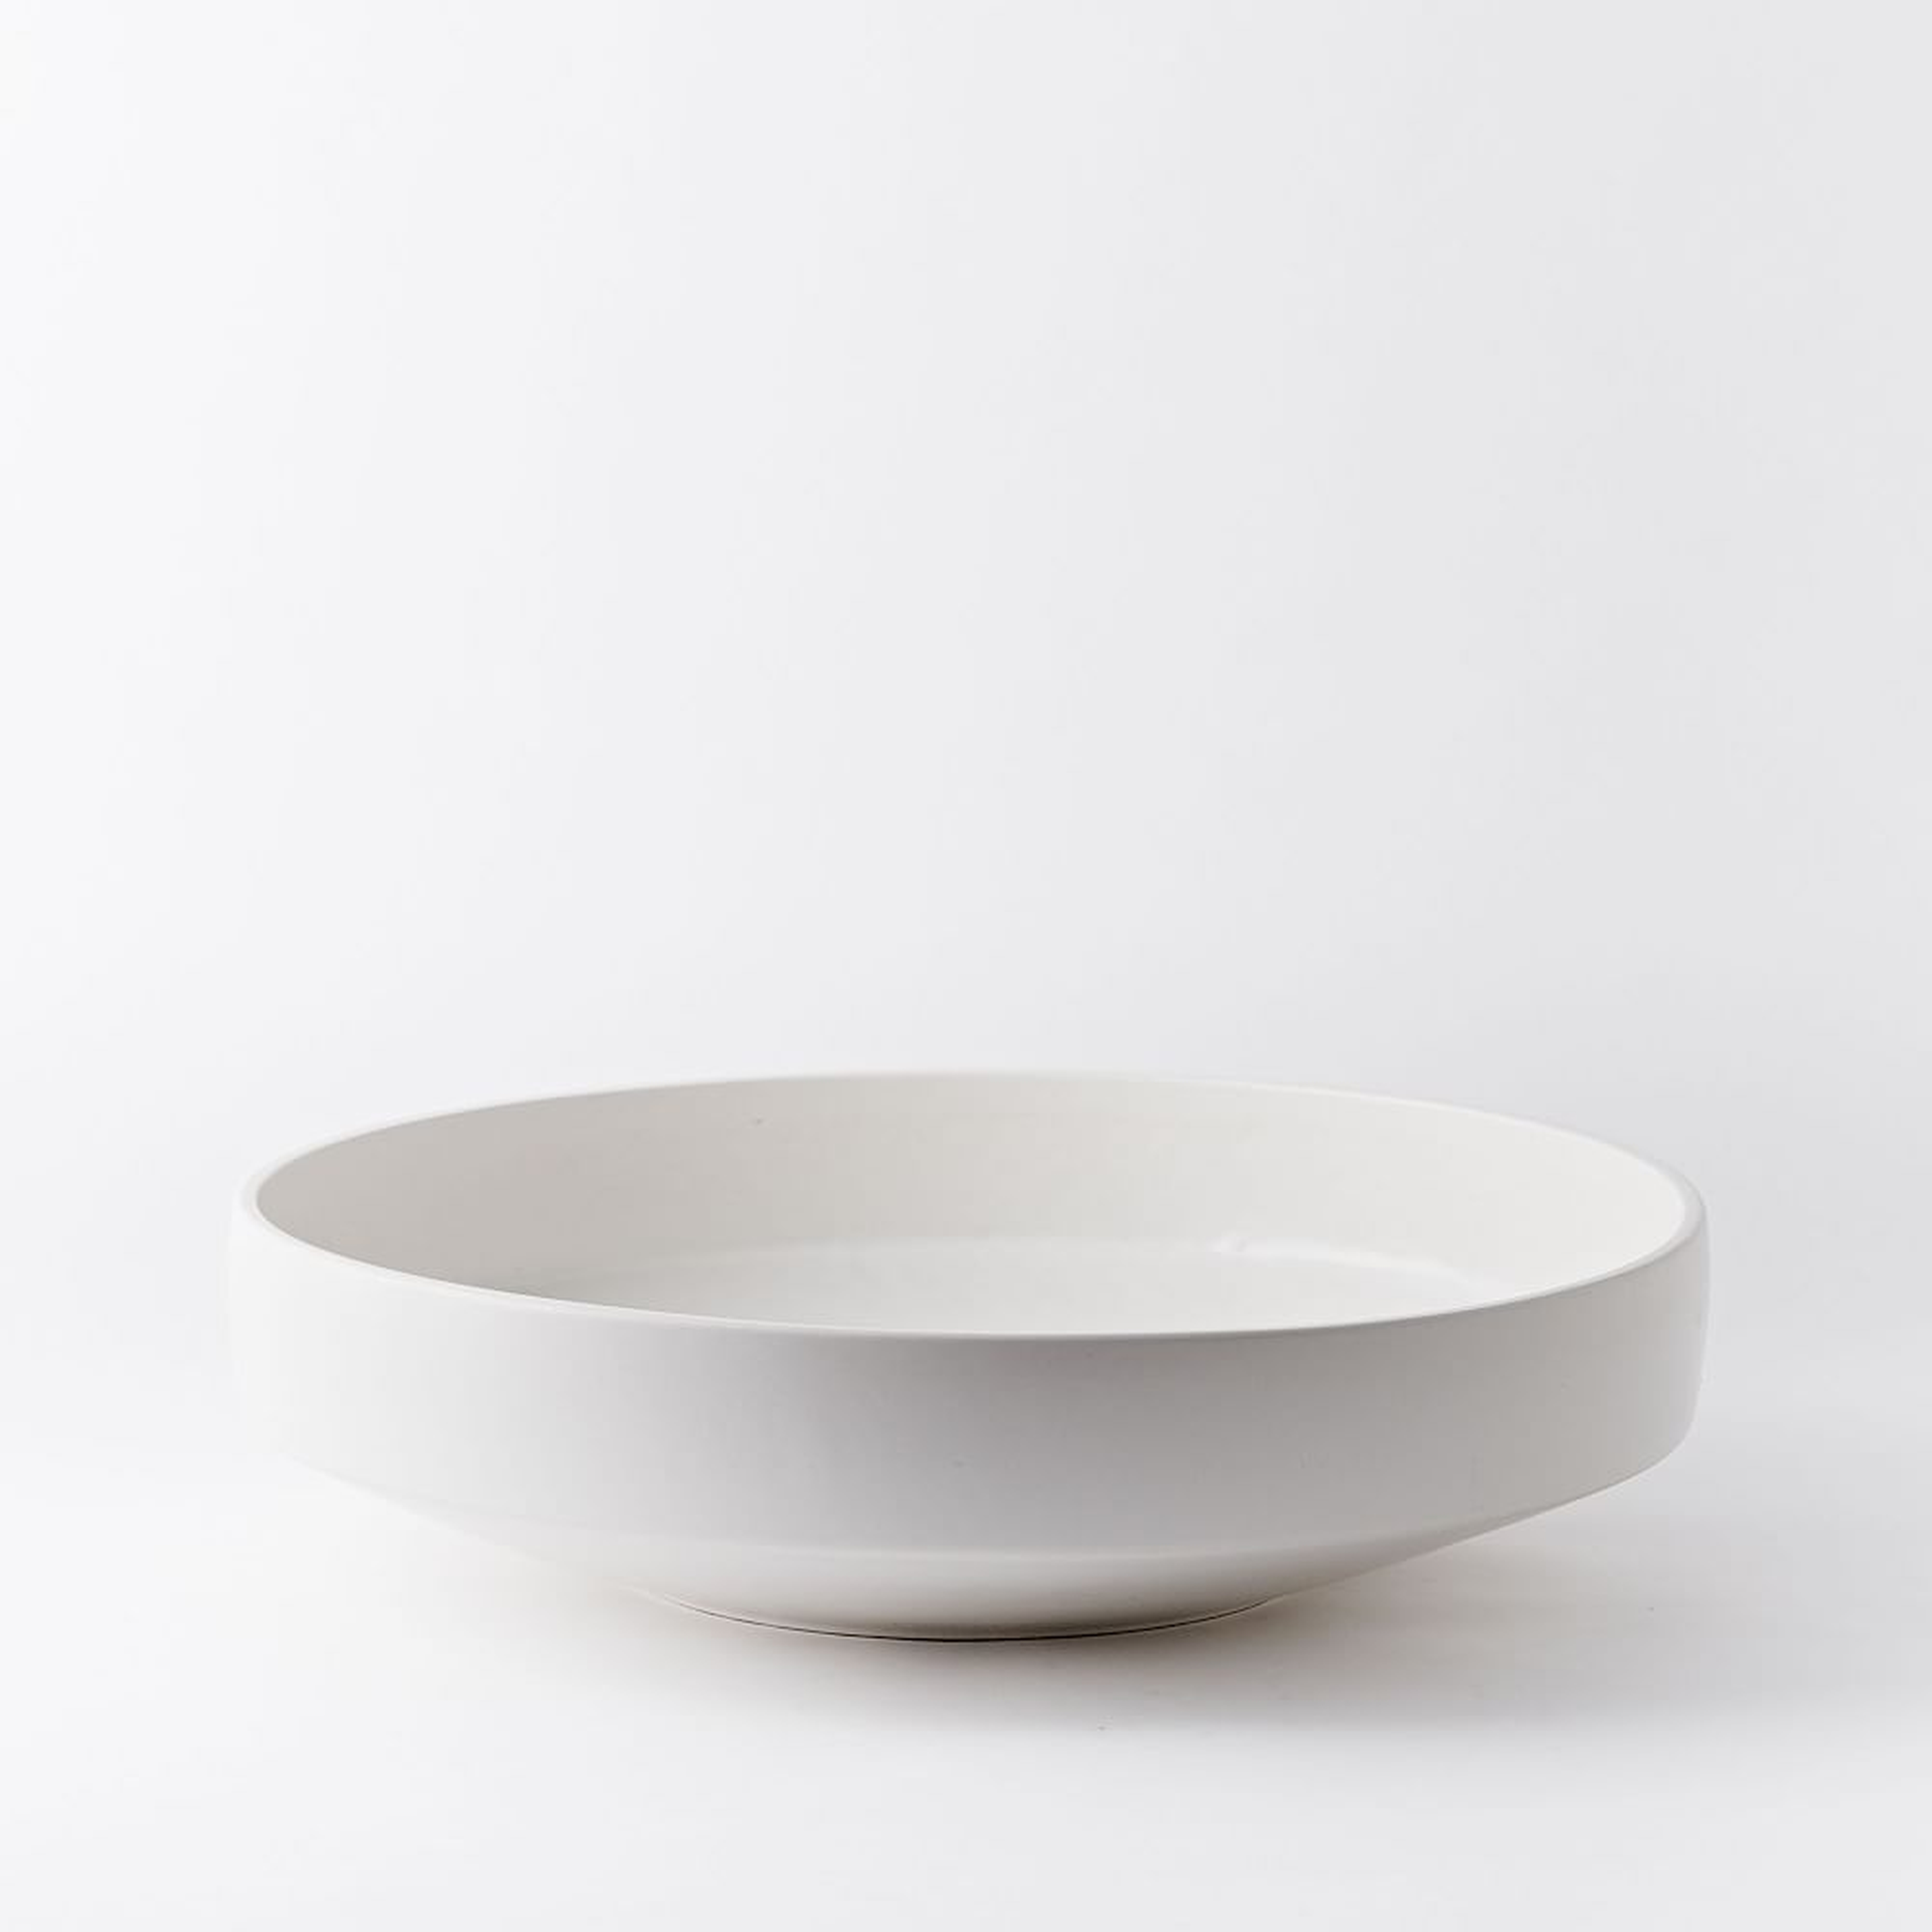 Pure White Ceramic Vase, Centerpiece Bowl 19.5"D - West Elm